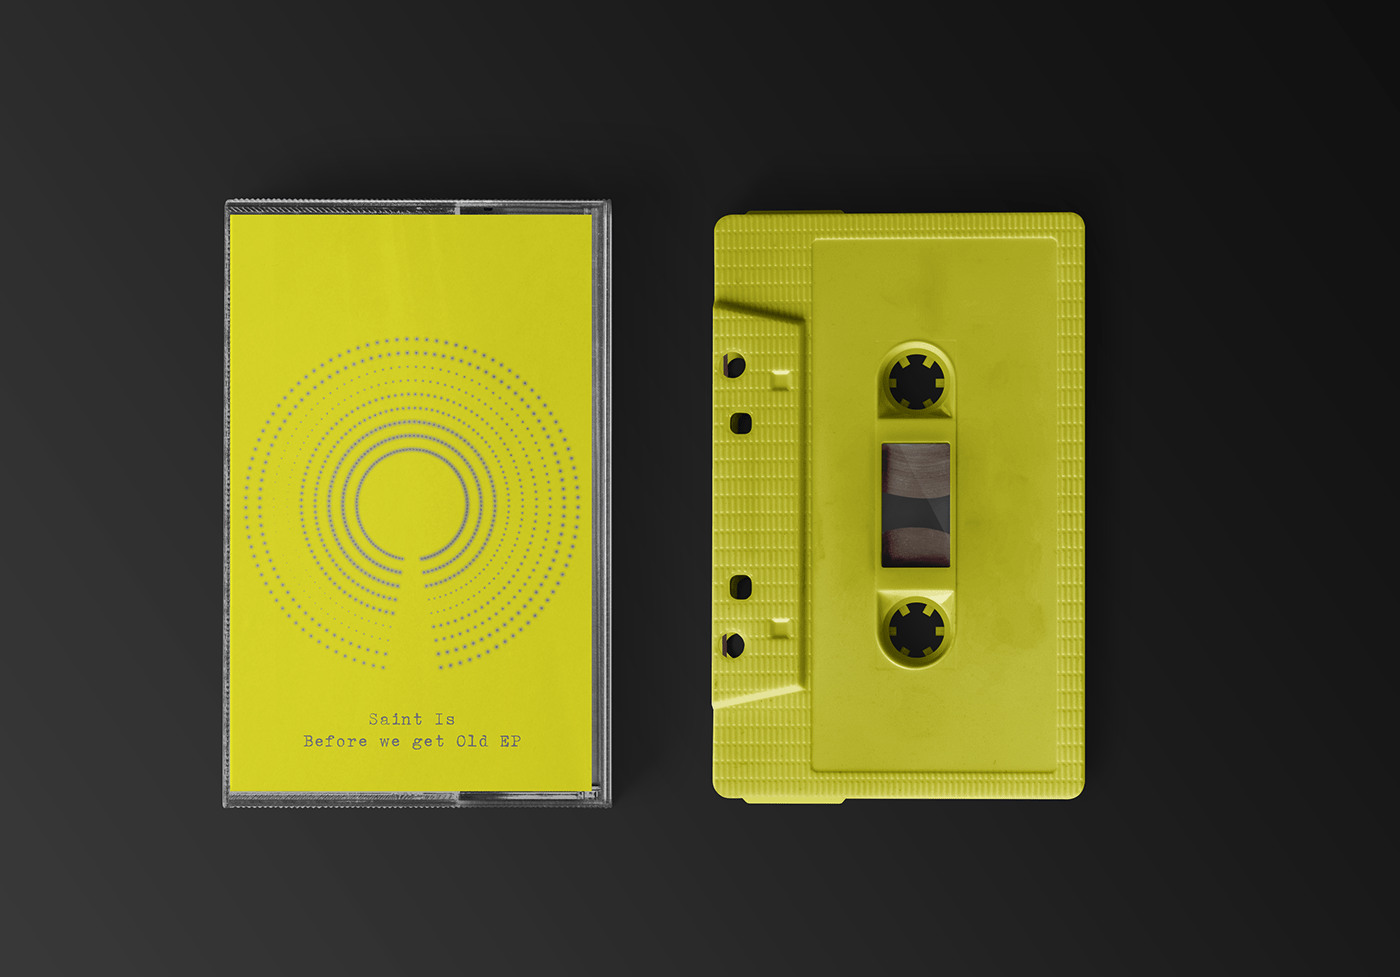 cassette circle Data data visualization dataart dataviz music tape cassette Album Cover Design yellow